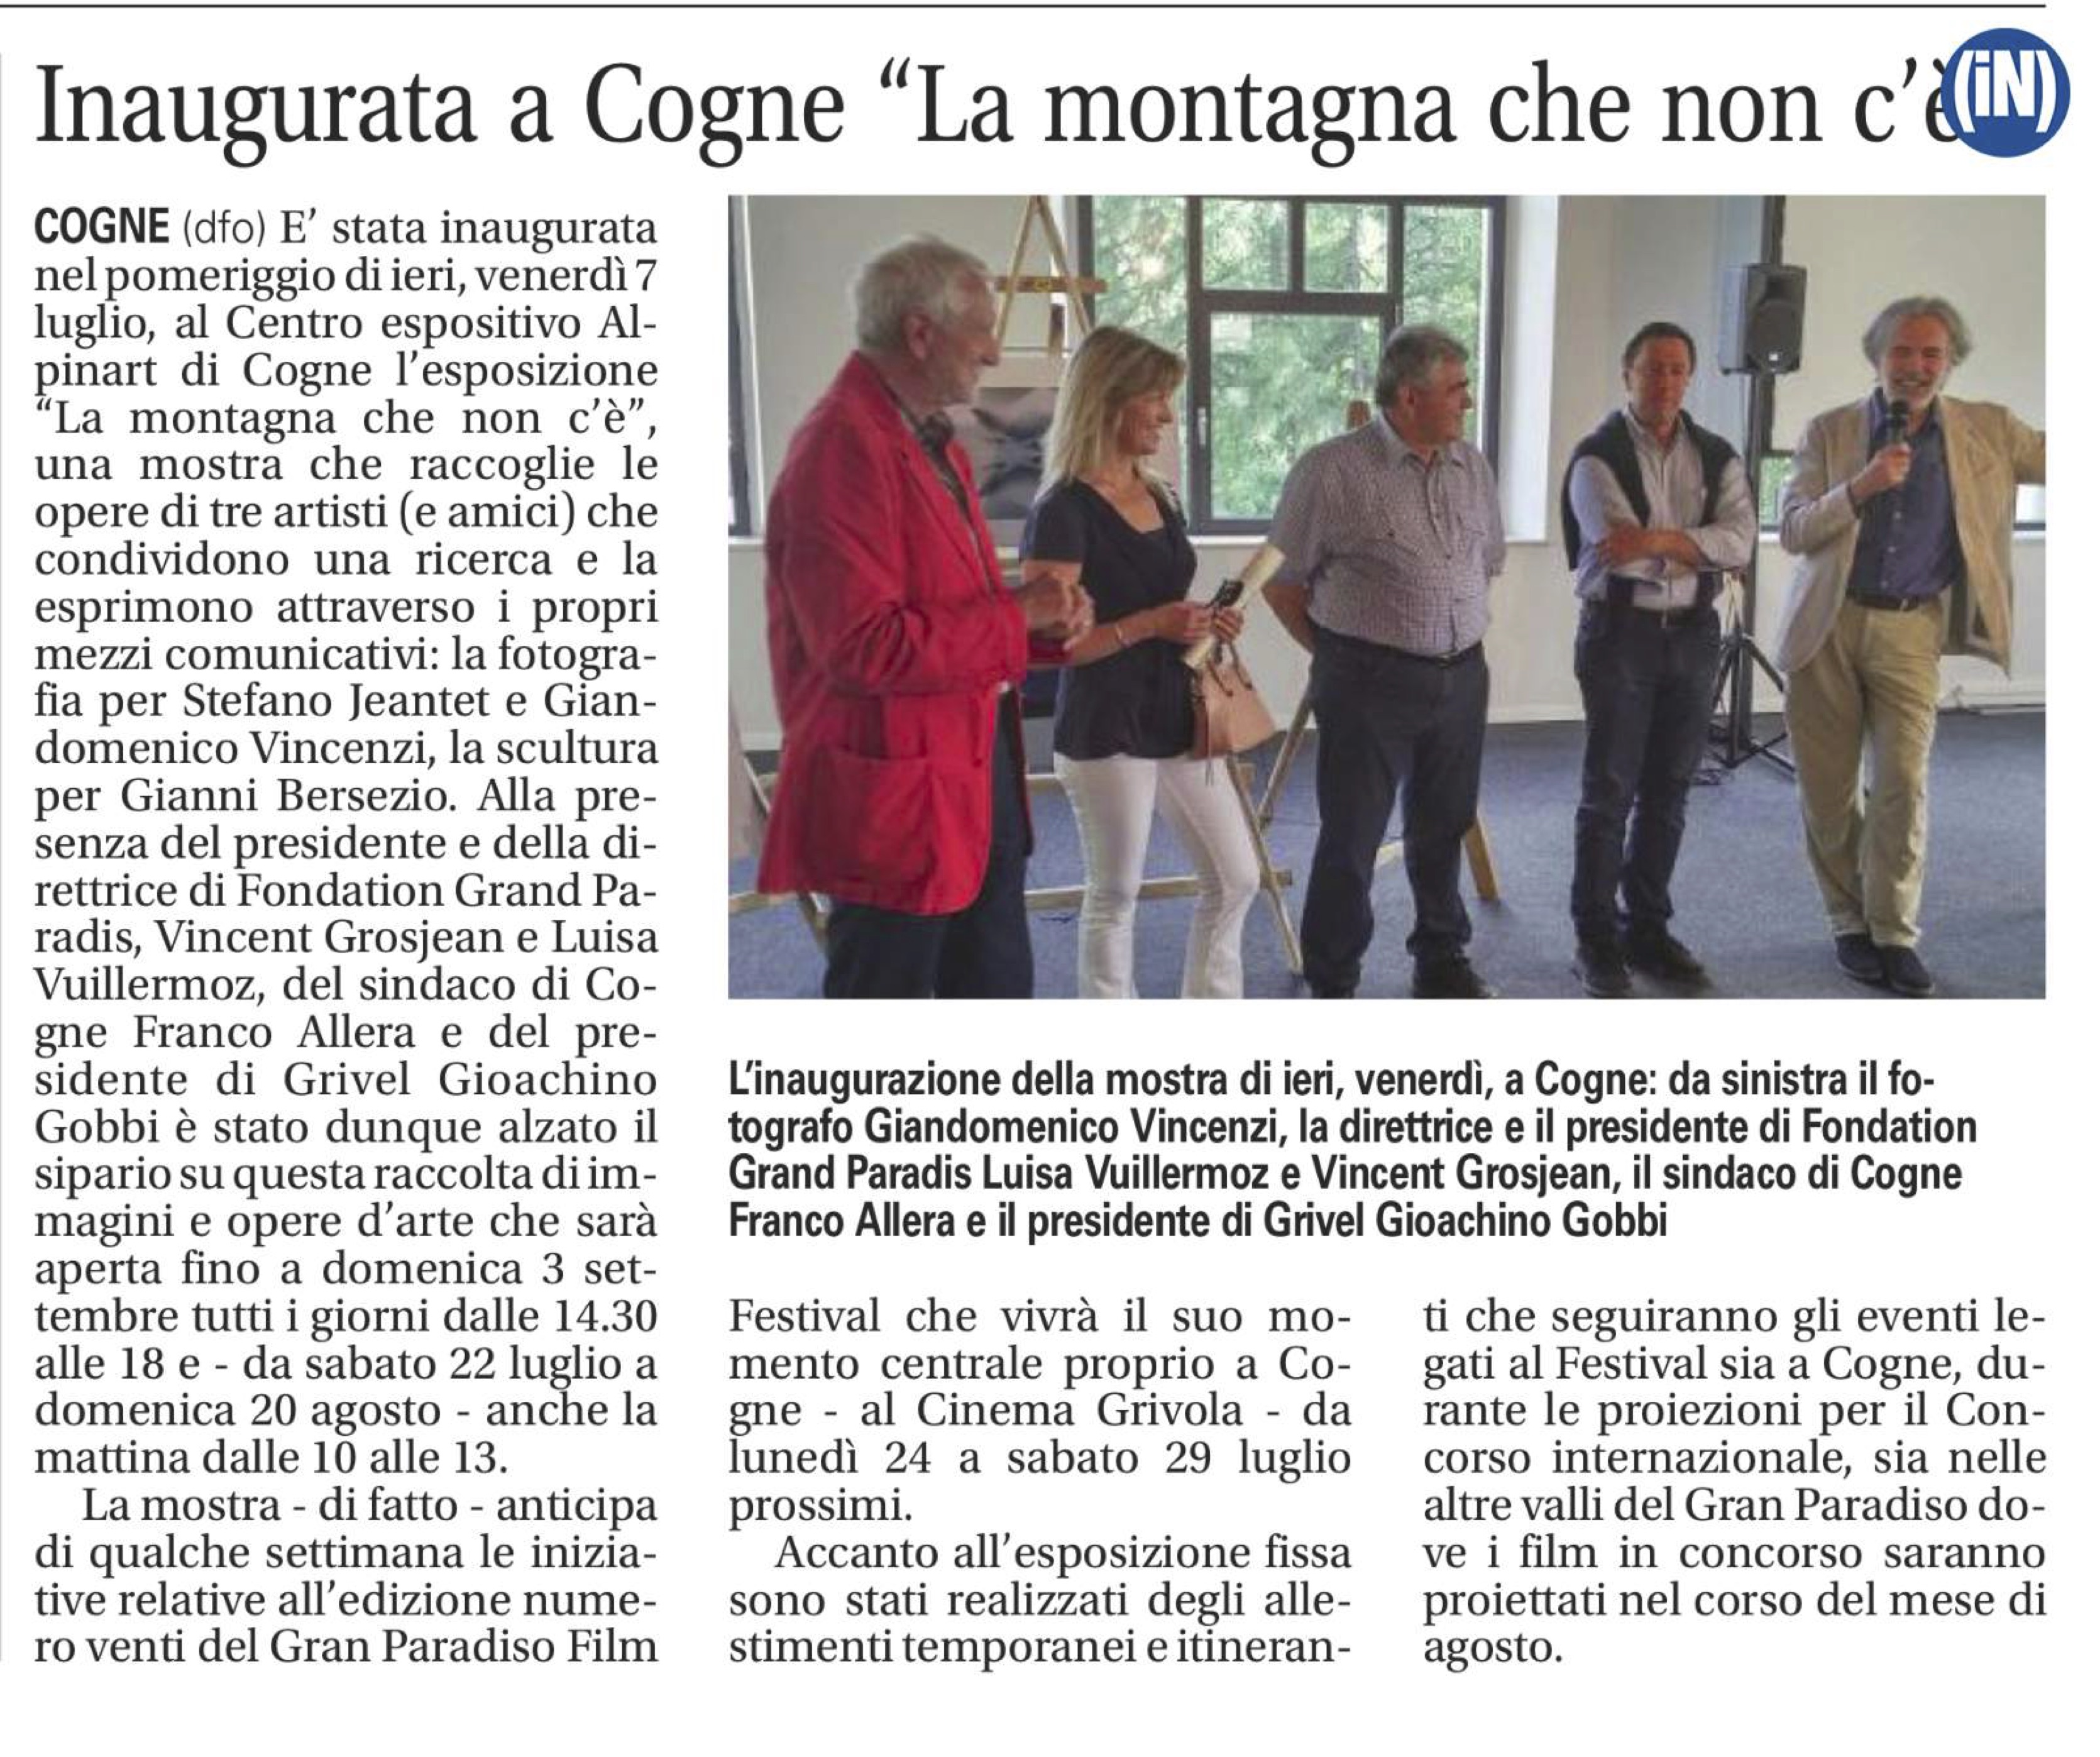 2017-07-08 La Vallee Notizie Inaugurata a Cogne La montagna che non c'e